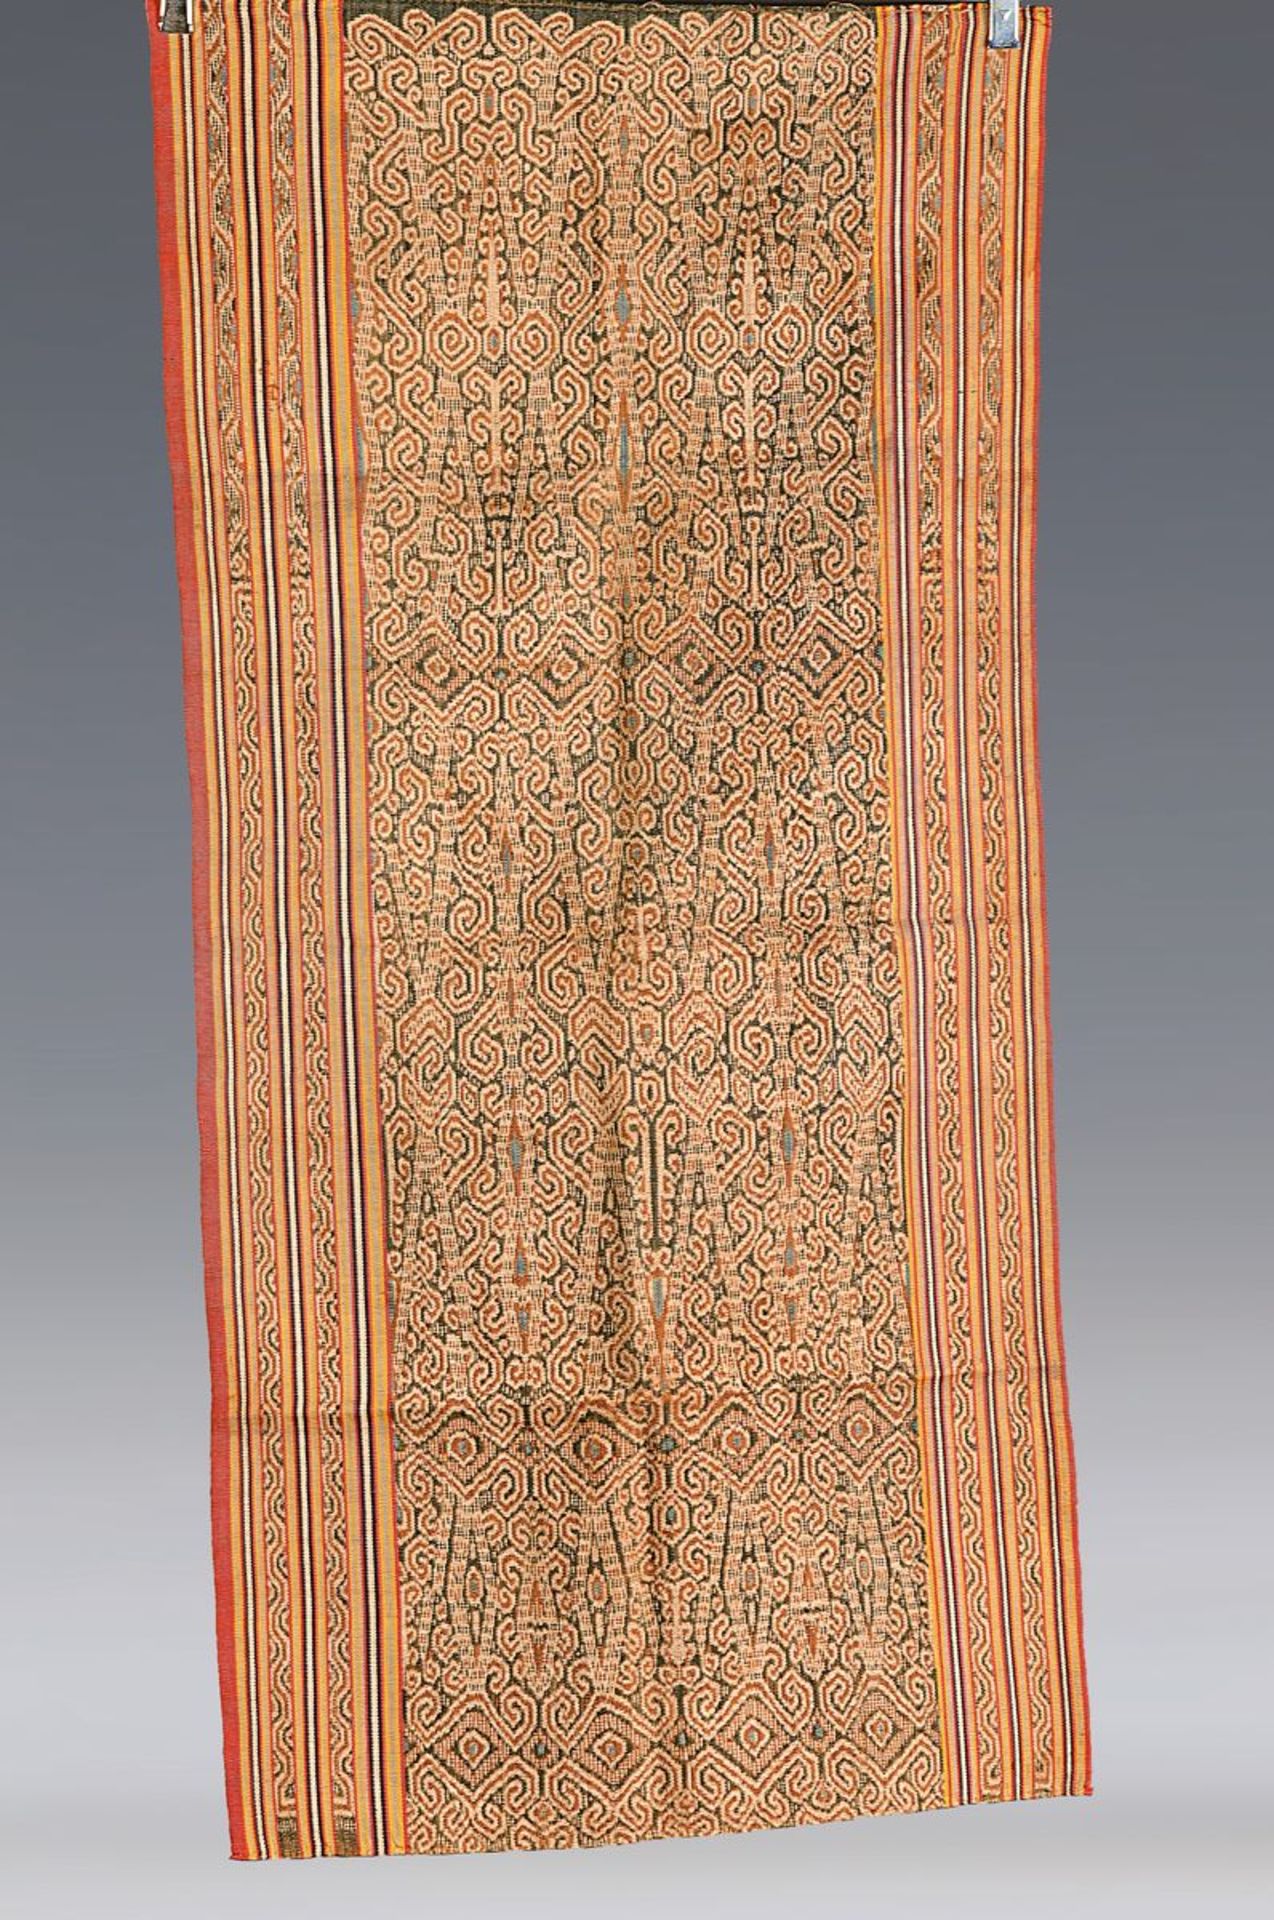 12 Tücher, Indonesien, um 1900 und jünger, meist Baumwolle, Ahnenkult, geom. Muster, Bordüren,